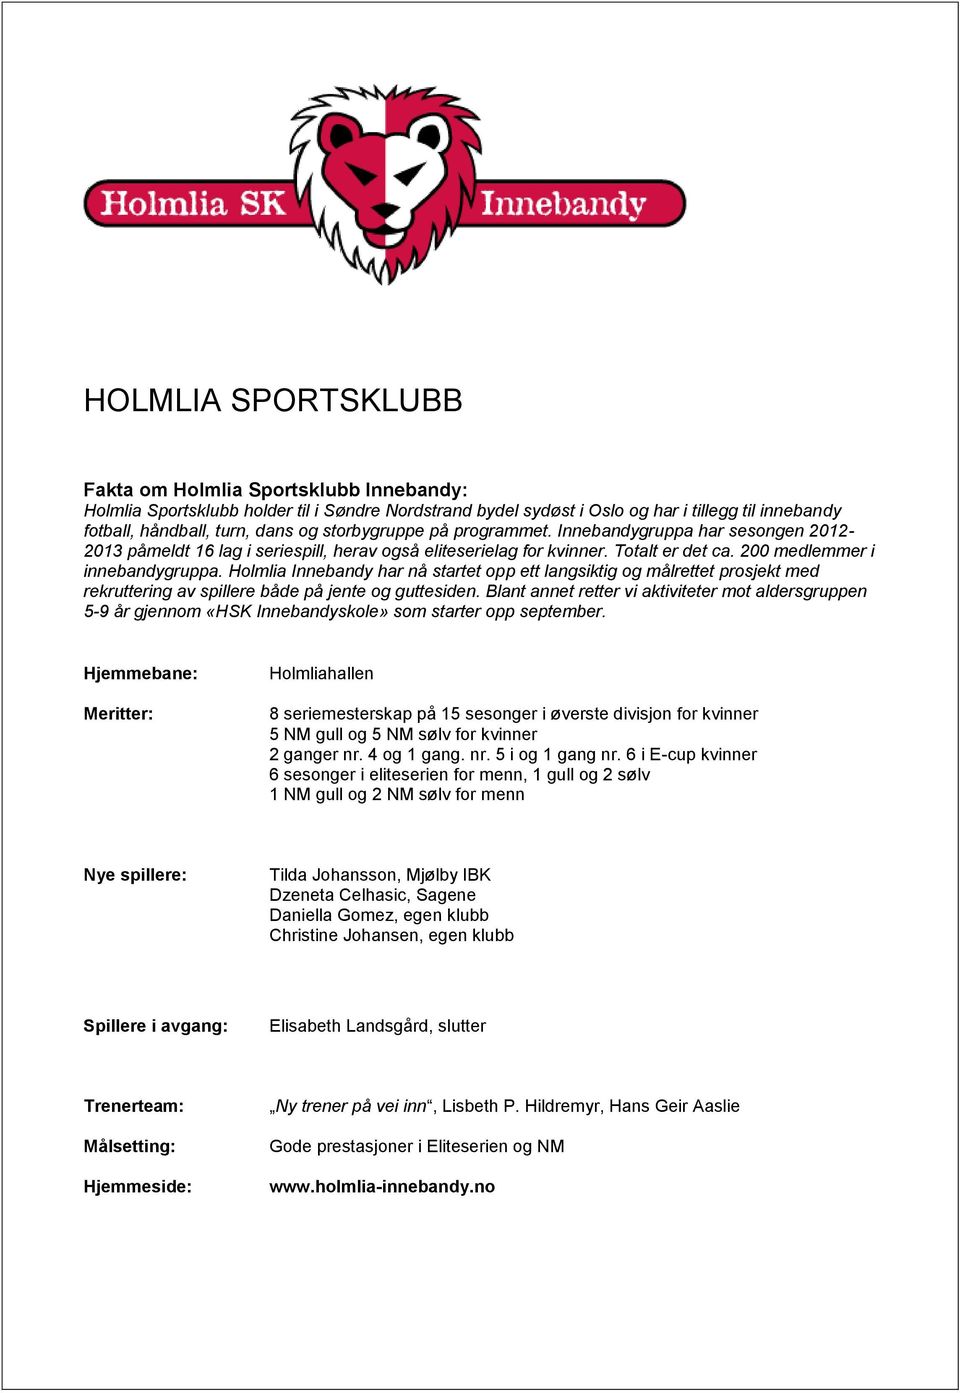 Holmlia Innebandy har nå startet opp ett langsiktig og målrettet prosjekt med rekruttering av spillere både på jente og guttesiden.